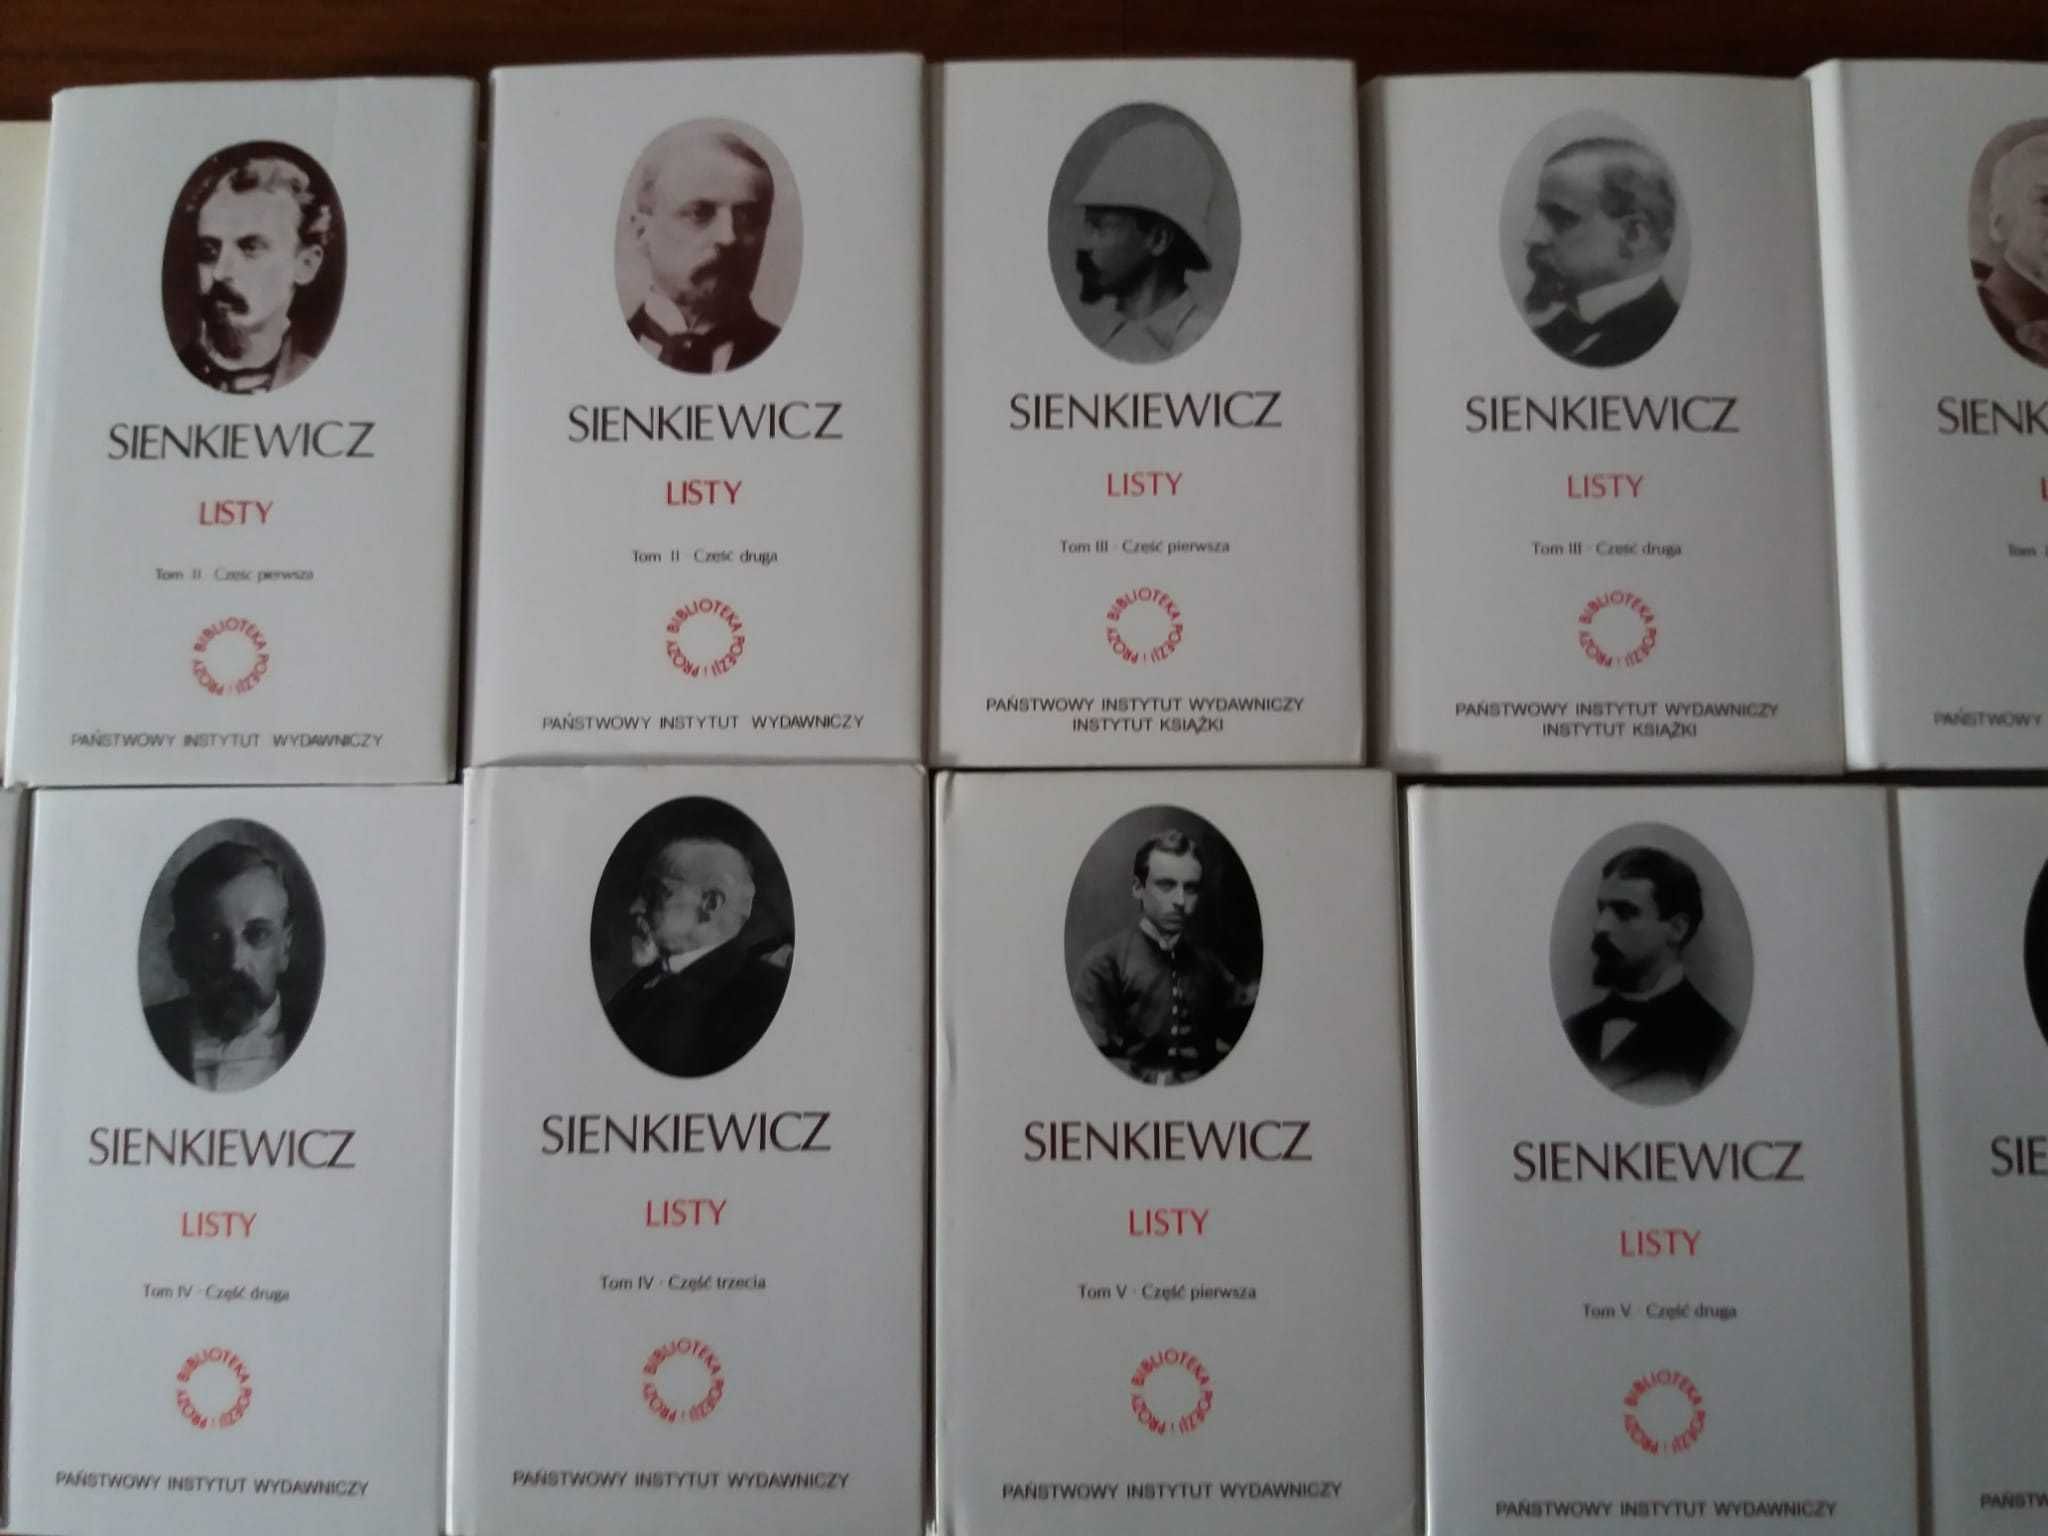 Henryk Sienkiewicz Listy - pełna edycja